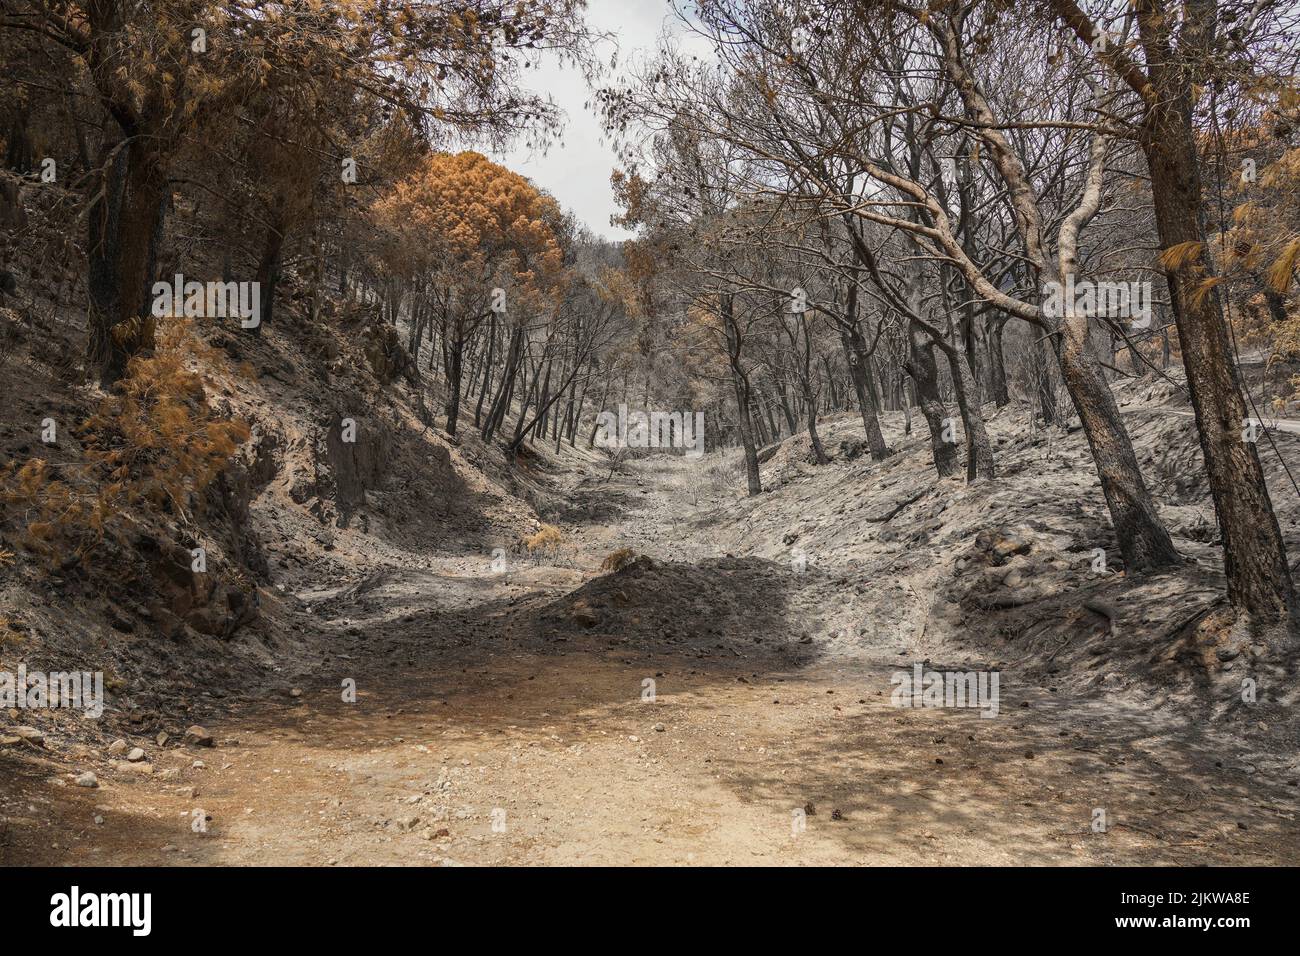 Montagnes espagnoles avec forêt de pins incendiées après un feu de forêt, Mijas, Malaga, Andalousie, Espagne Banque D'Images